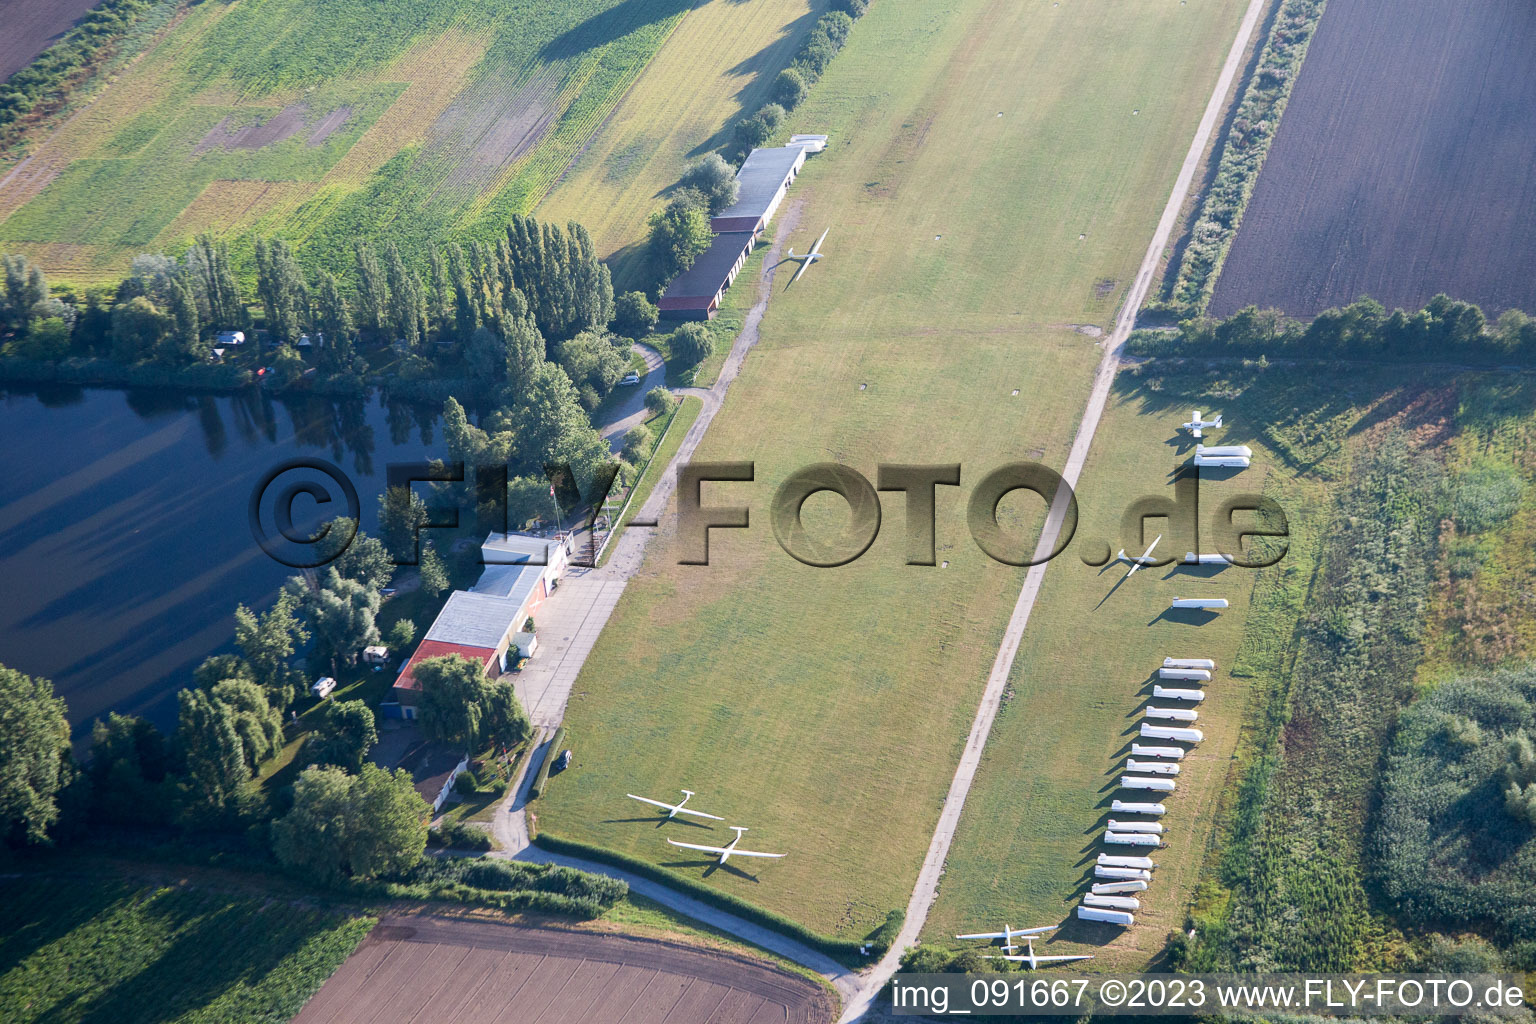 Aerial view of Glider airfield in the district Dannstadt in Dannstadt-Schauernheim in the state Rhineland-Palatinate, Germany